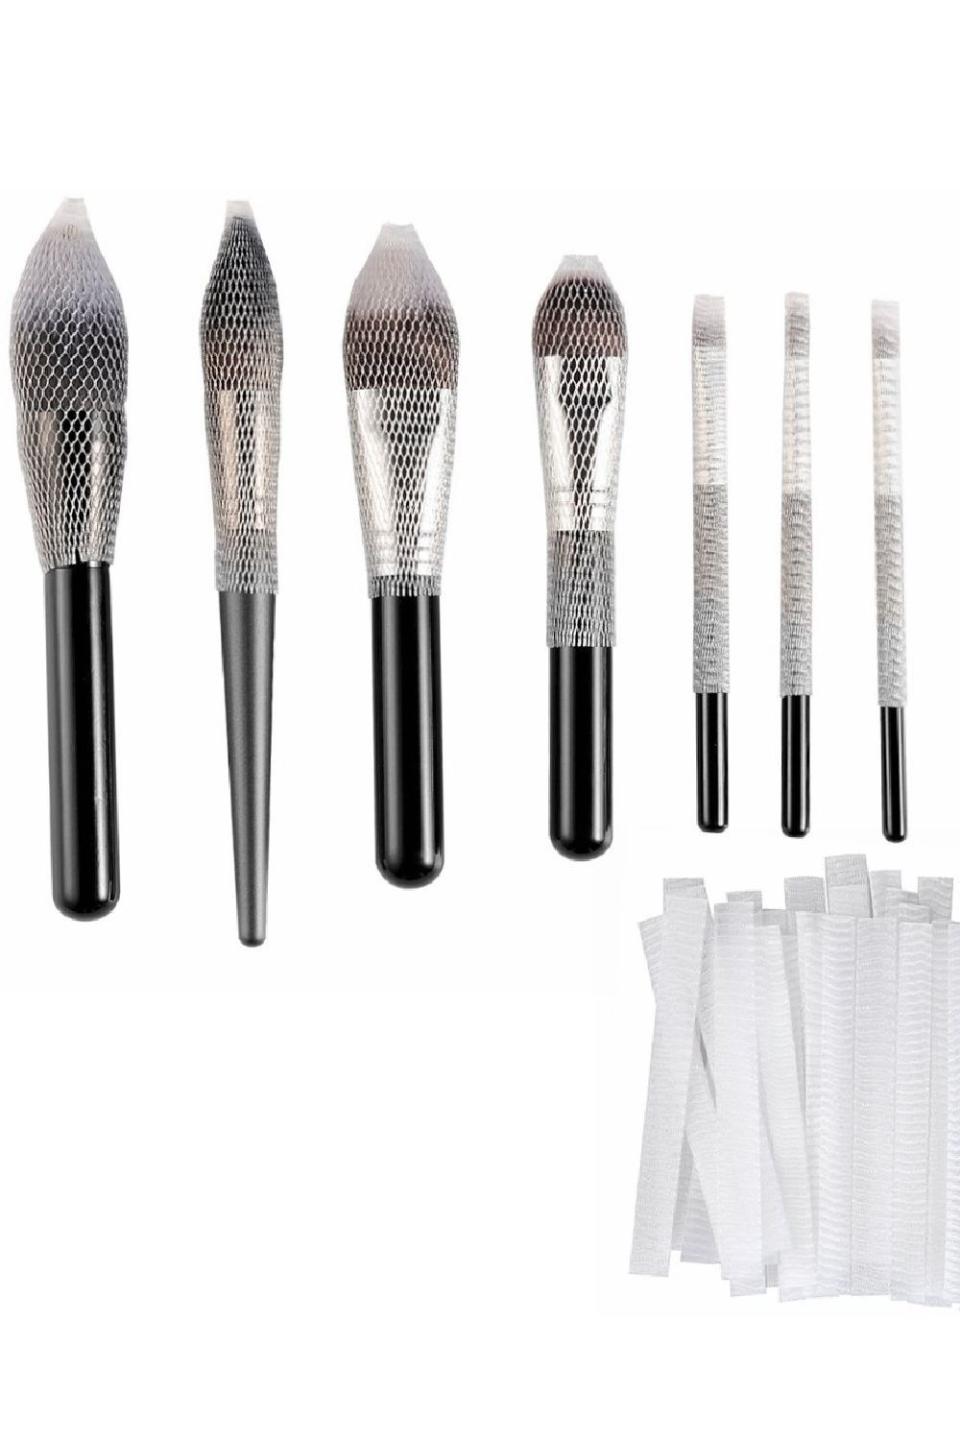 Clothobeauty 40 pcs Makeup Brushes Pen Guard Protector Set